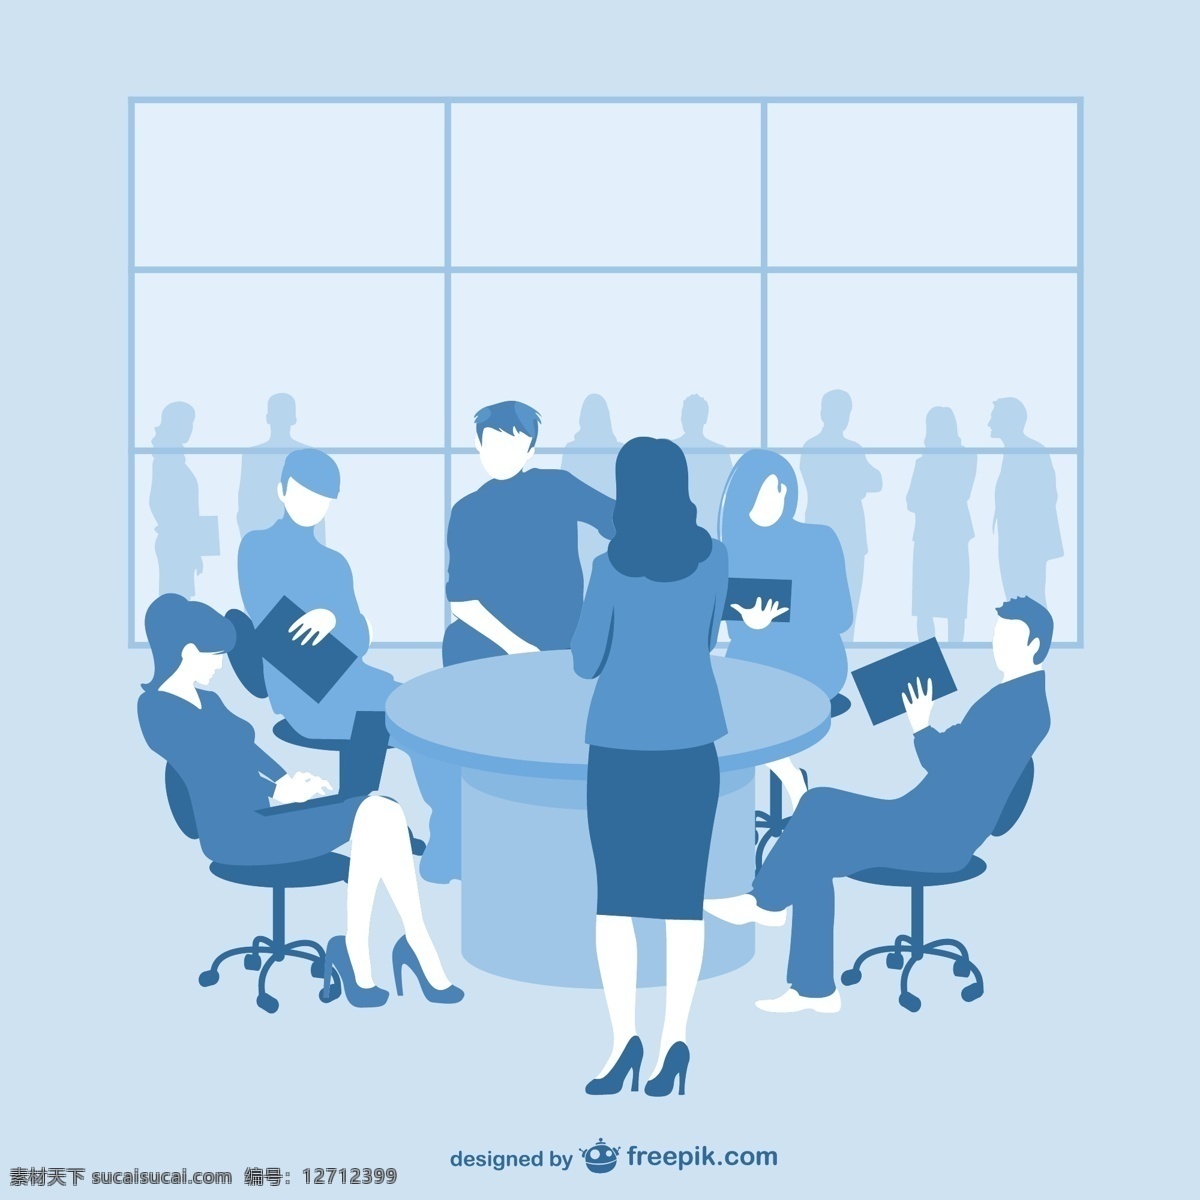 蓝色 商务会议 剪影 商务 人 办公室 模板 表格 营销 轮廓 会议 商务人员 团队 商人 平面设计 企业 公司 商务人士